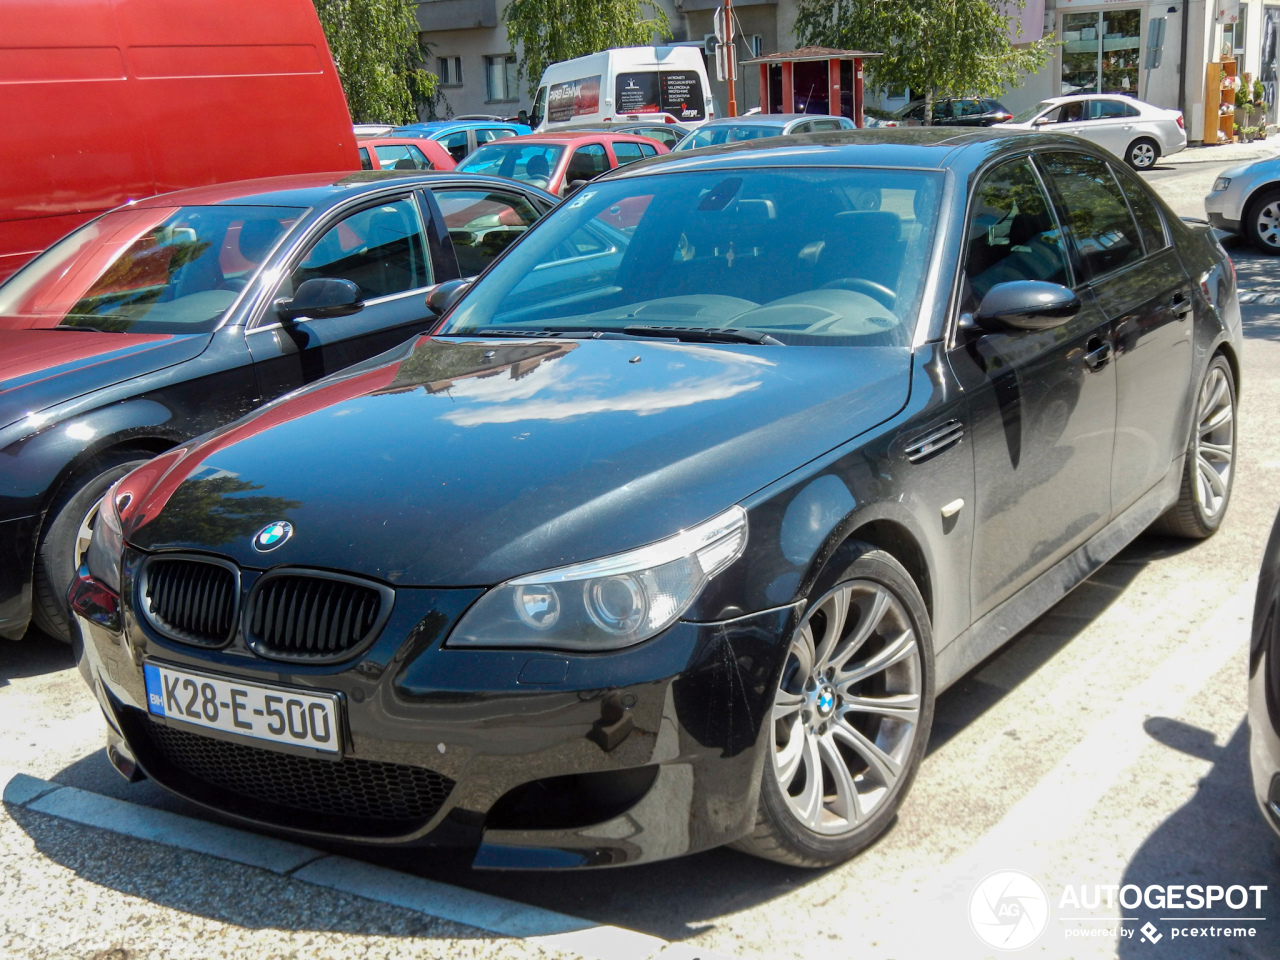 BMW M5 E60 2005 - 16 balandþio 2013 - Autogespot